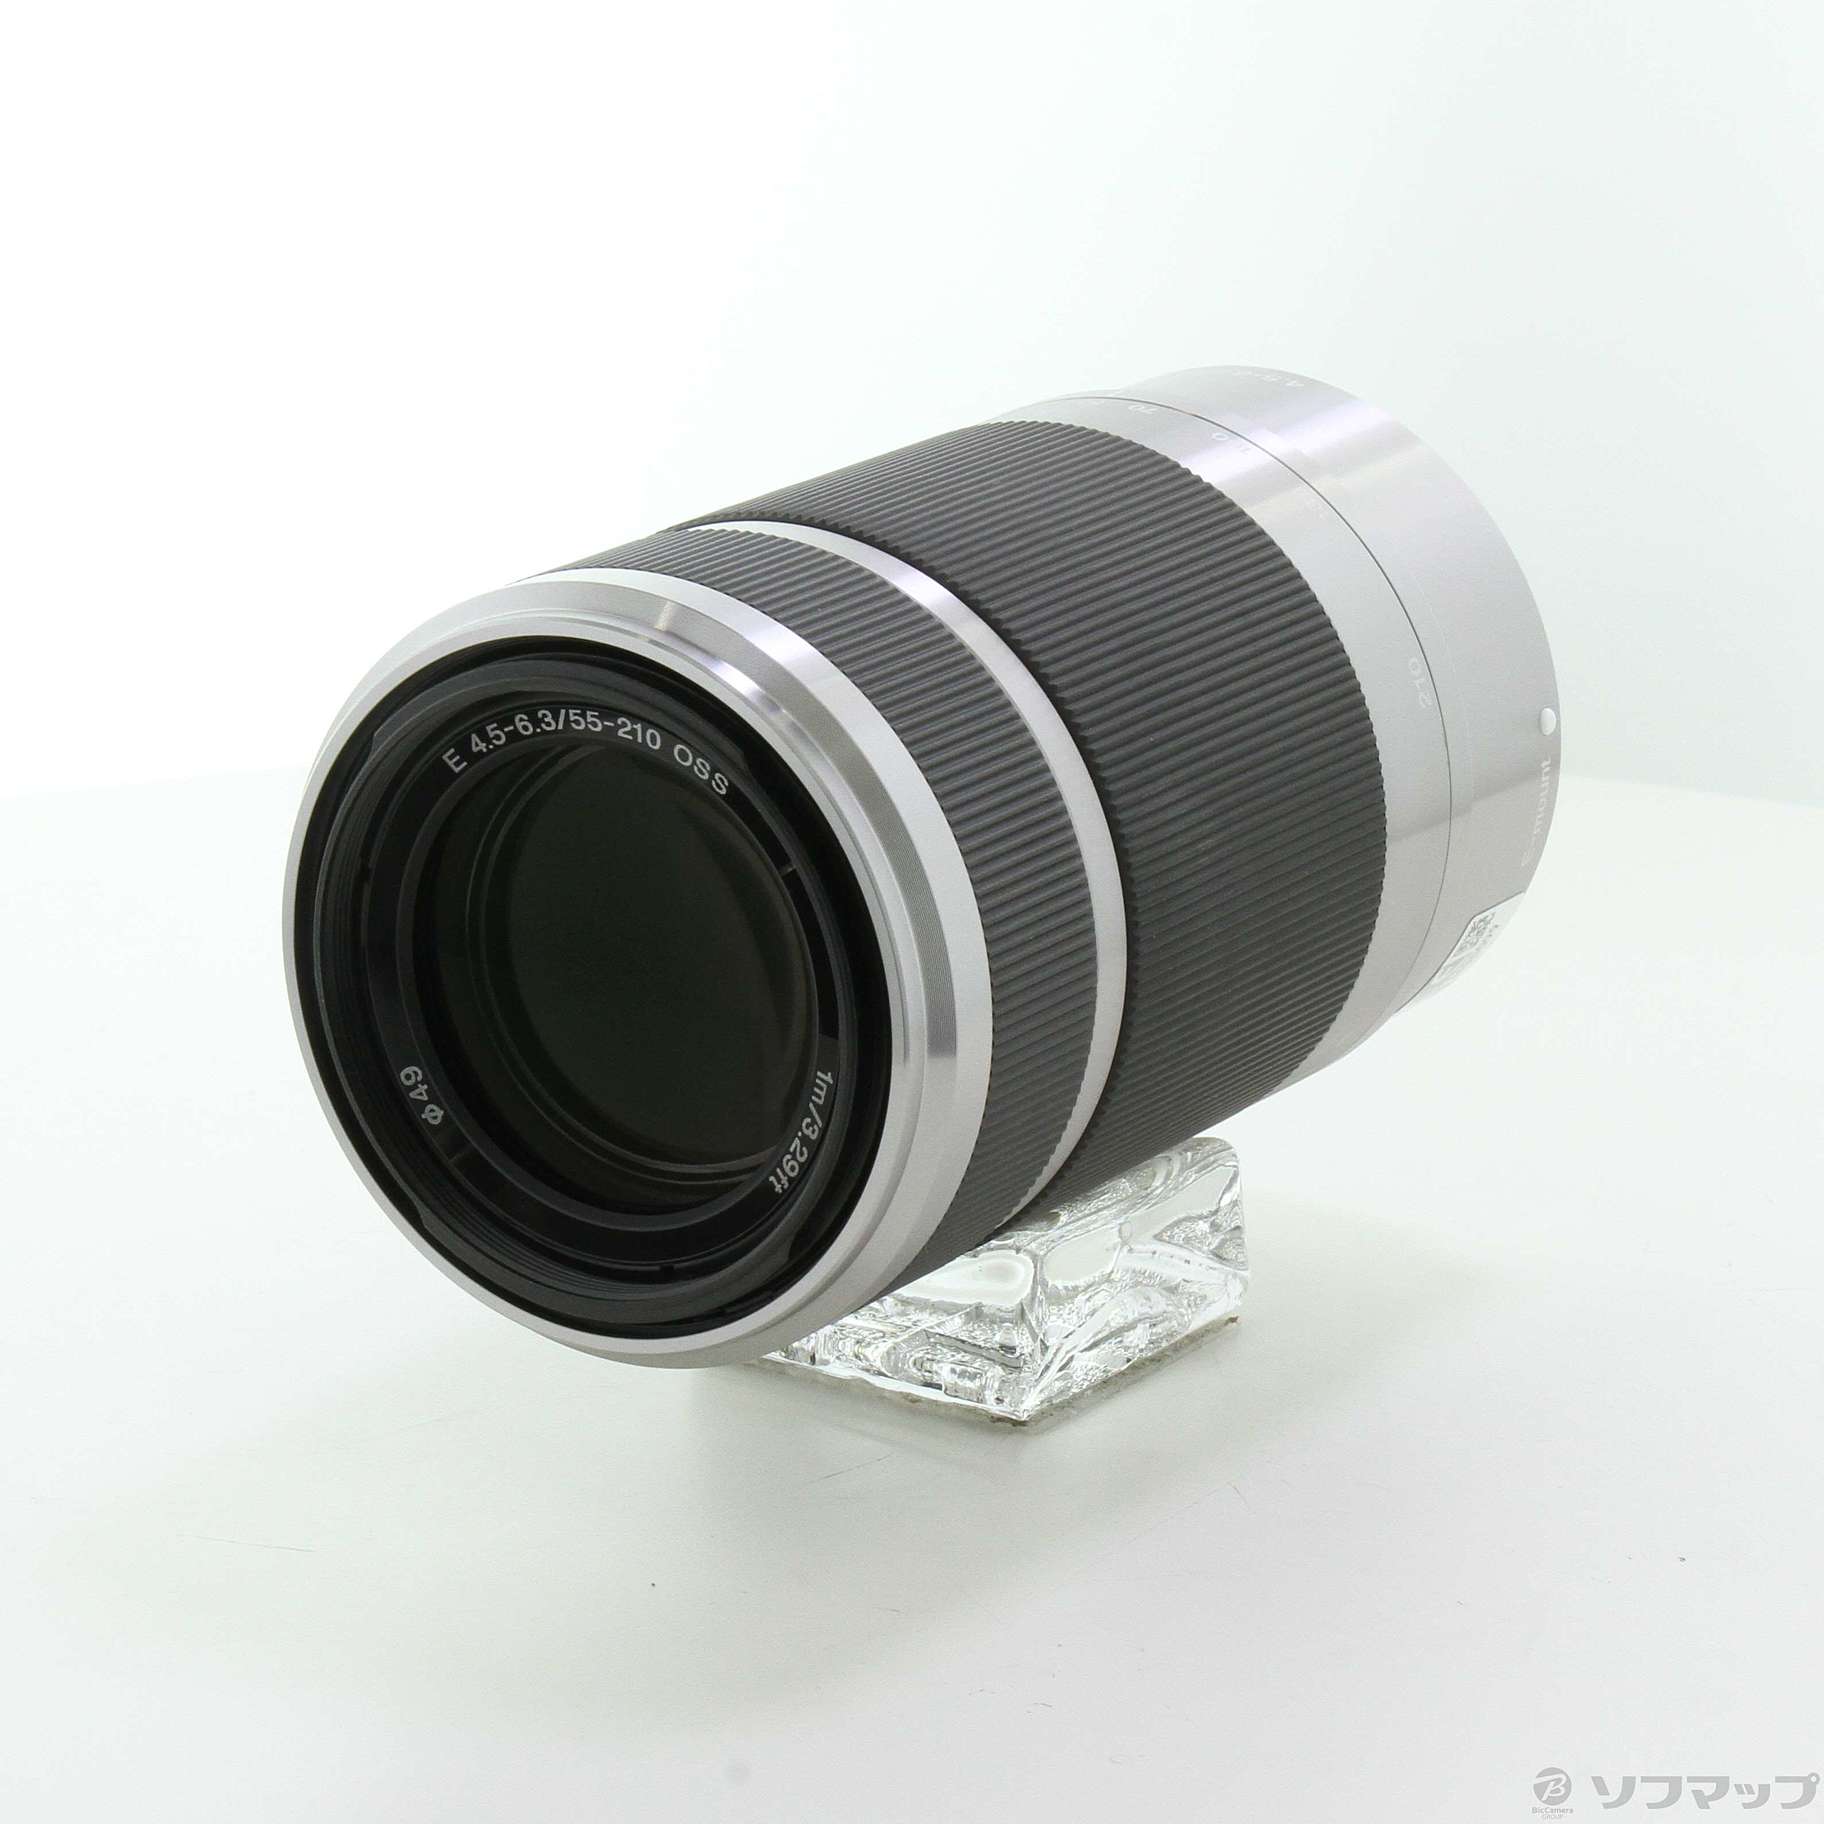 SONY望遠ズームレンズE 55-210mm F4.5-6.3 OSS - レンズ(ズーム)